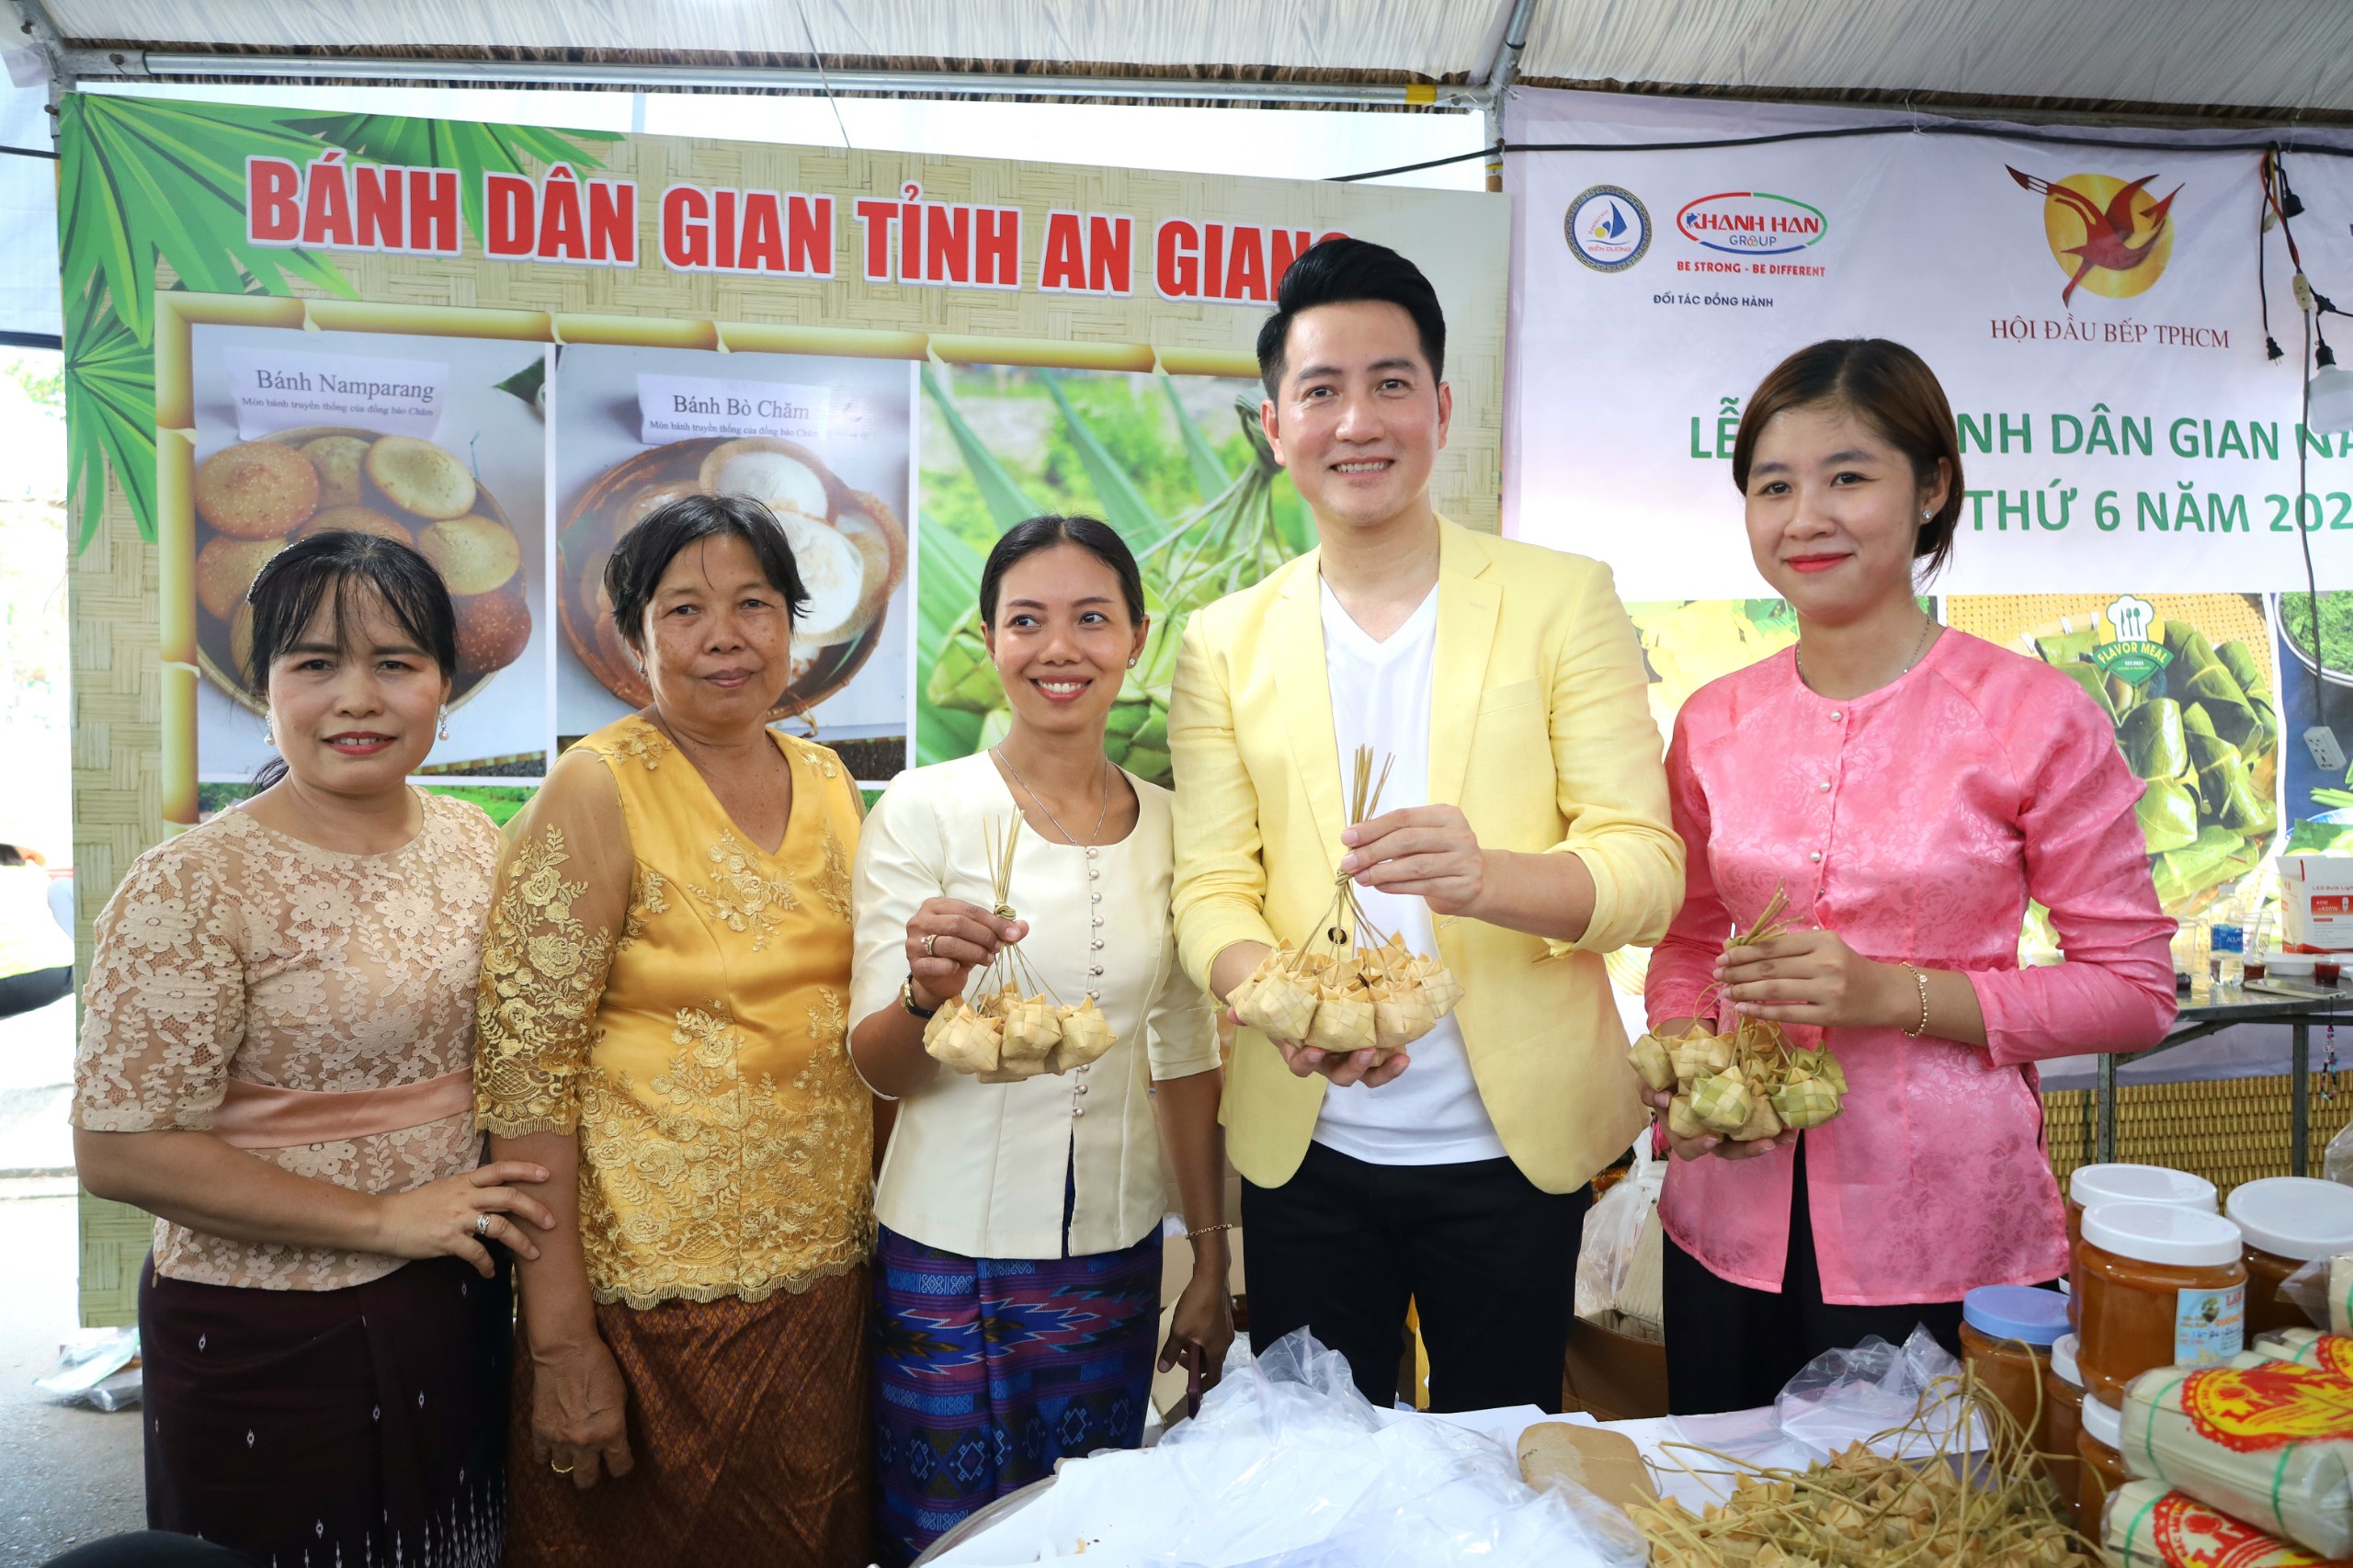 Ca sĩ Nguyễn Phi Hùng cùng các nghệ nhân làm bánh người Khmer.